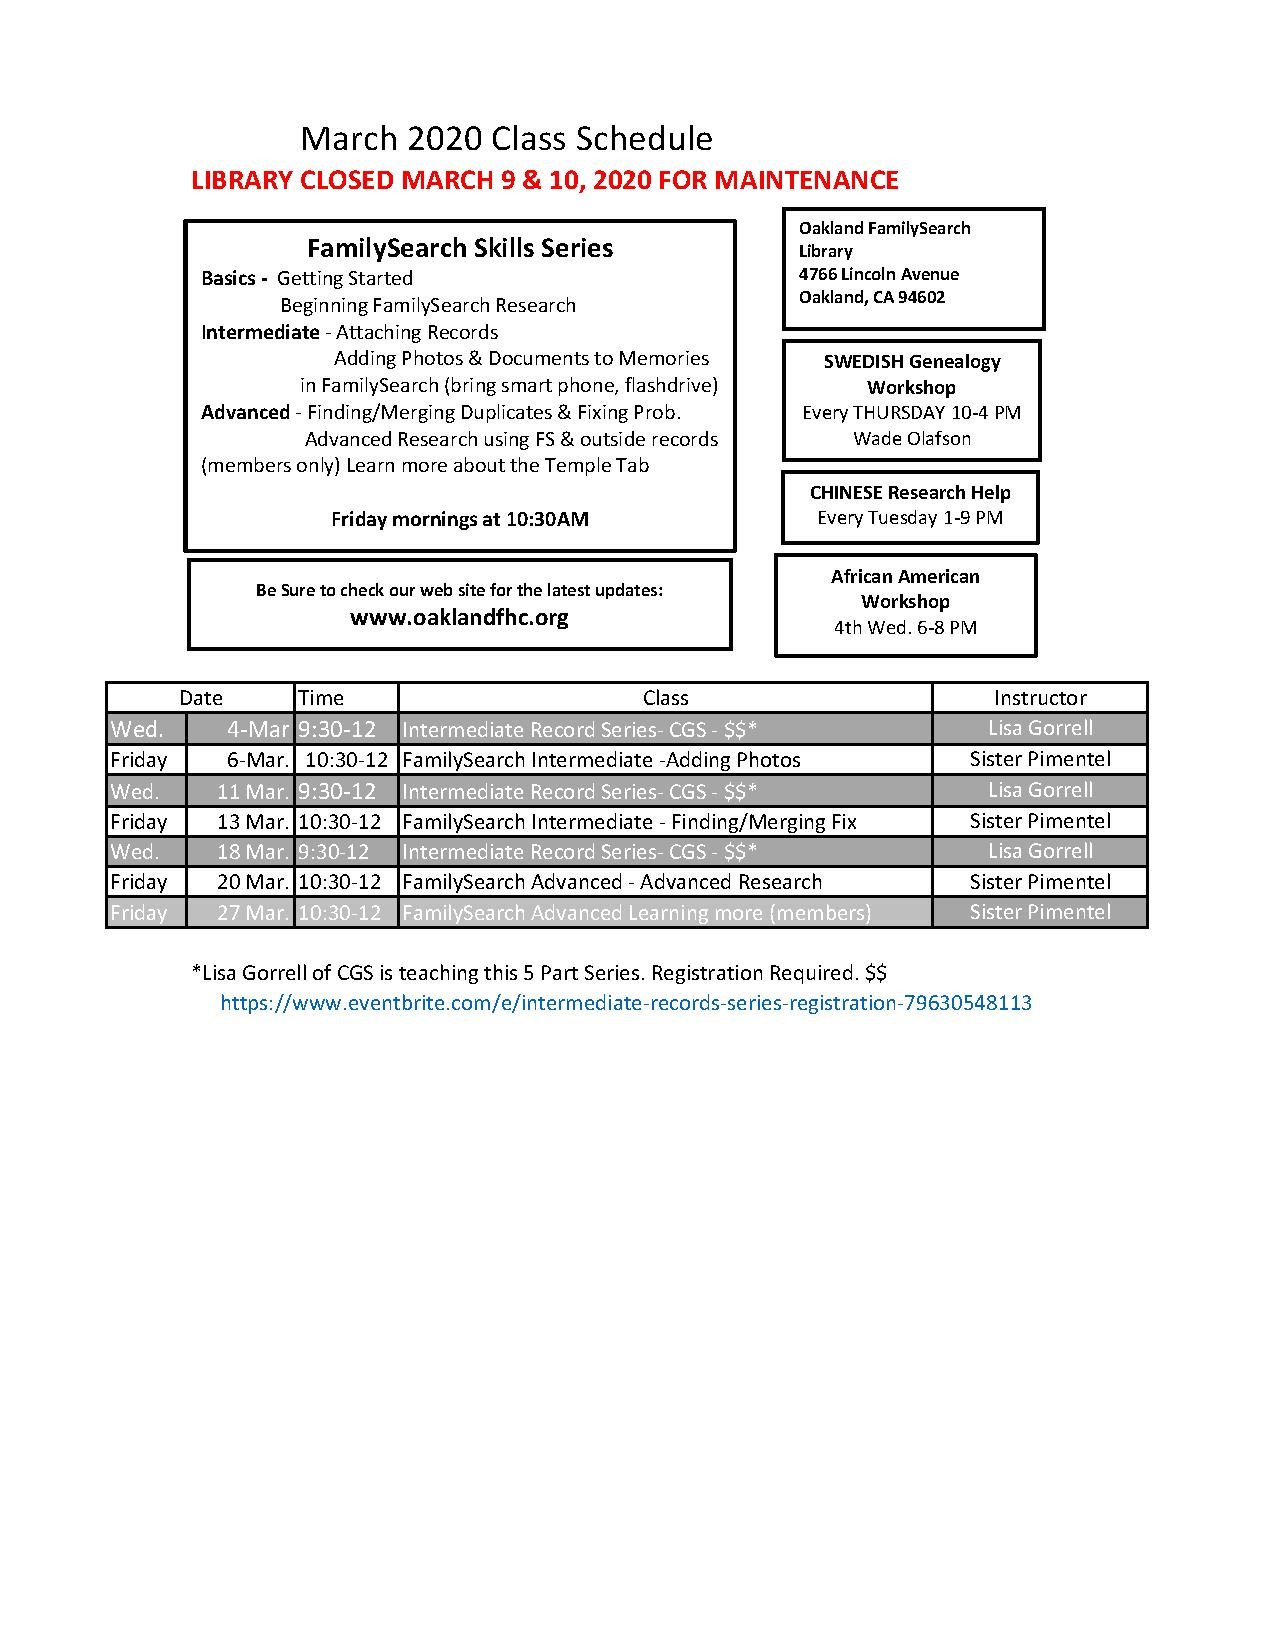 March 2020 Class Schedule rev.pdf